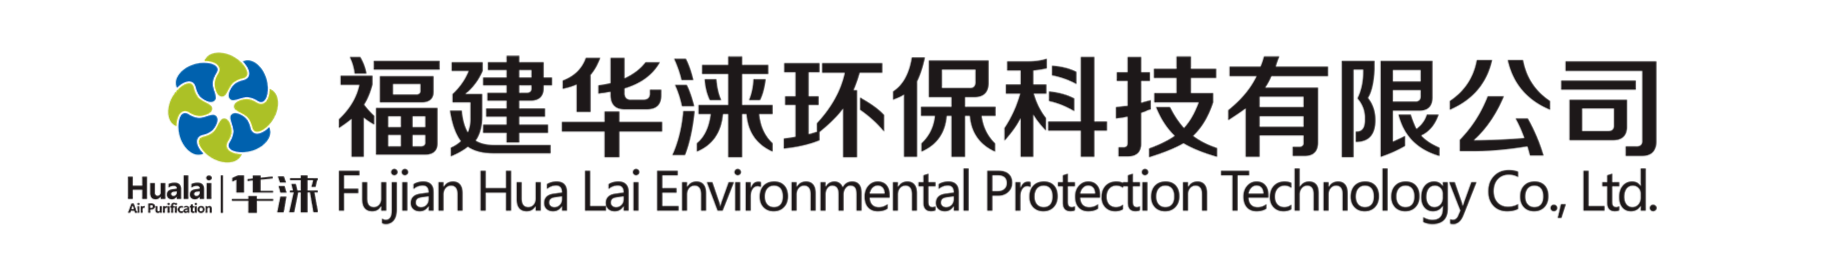 超声波雾化机-福建华涞环保科技有限公司